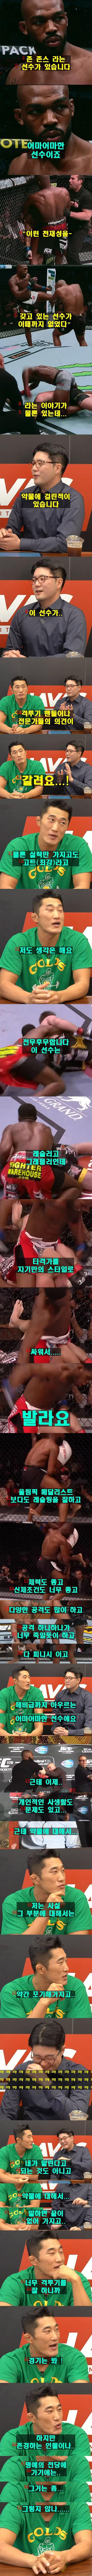 김동현이 생각하는 UFC 챔피언 존 존스